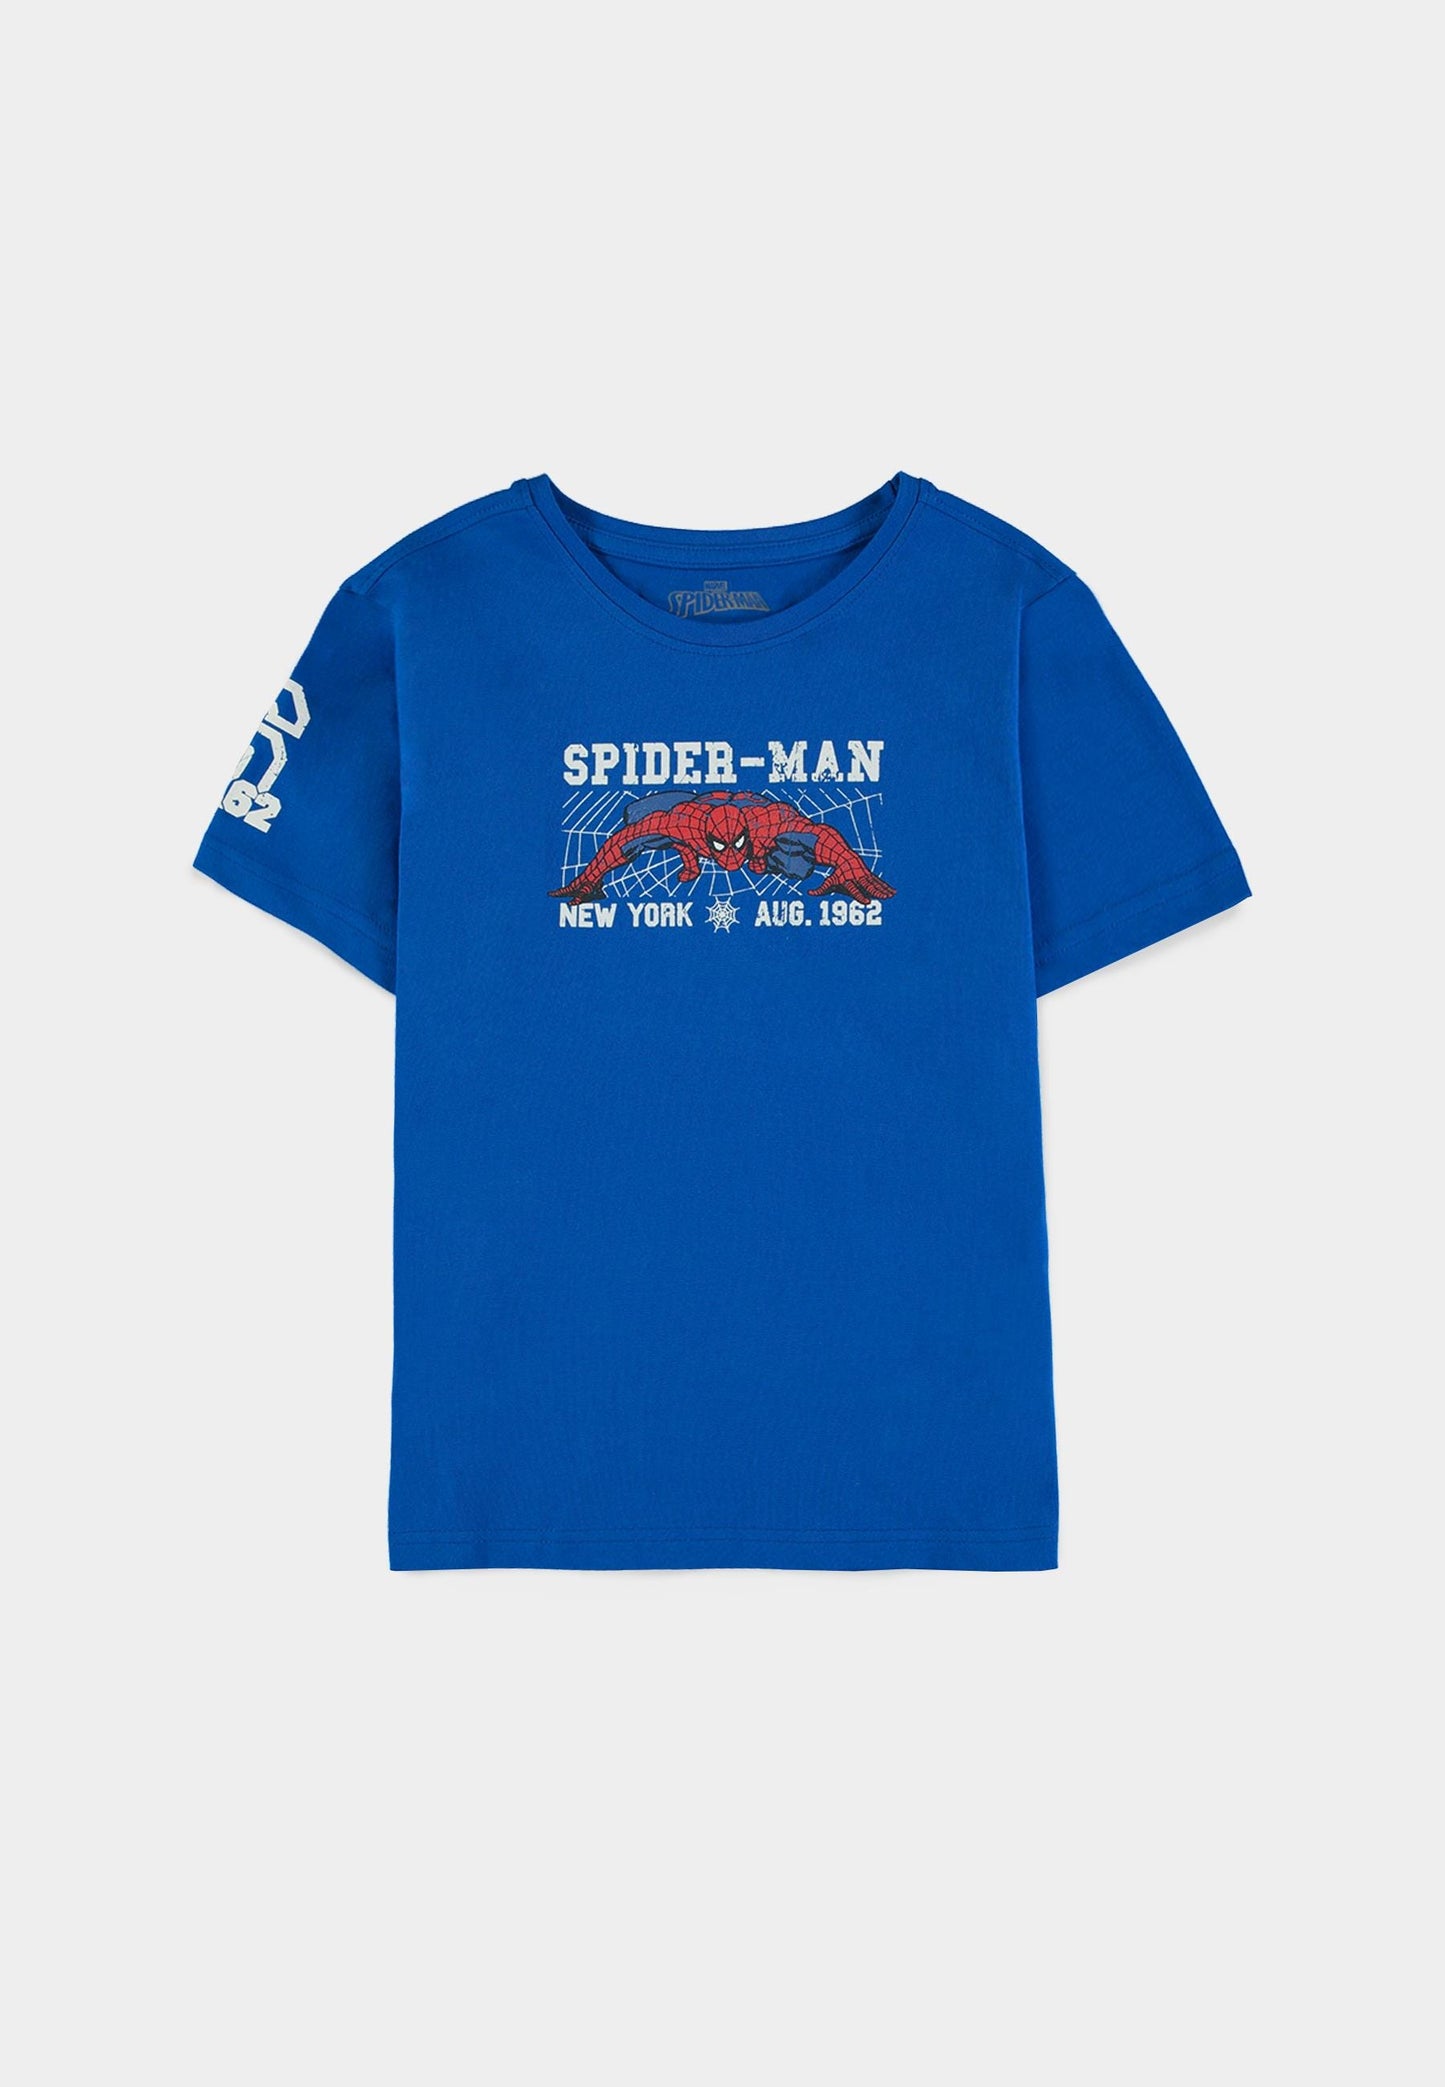 Spider-Man - Boys Short Sleeved T-shirt